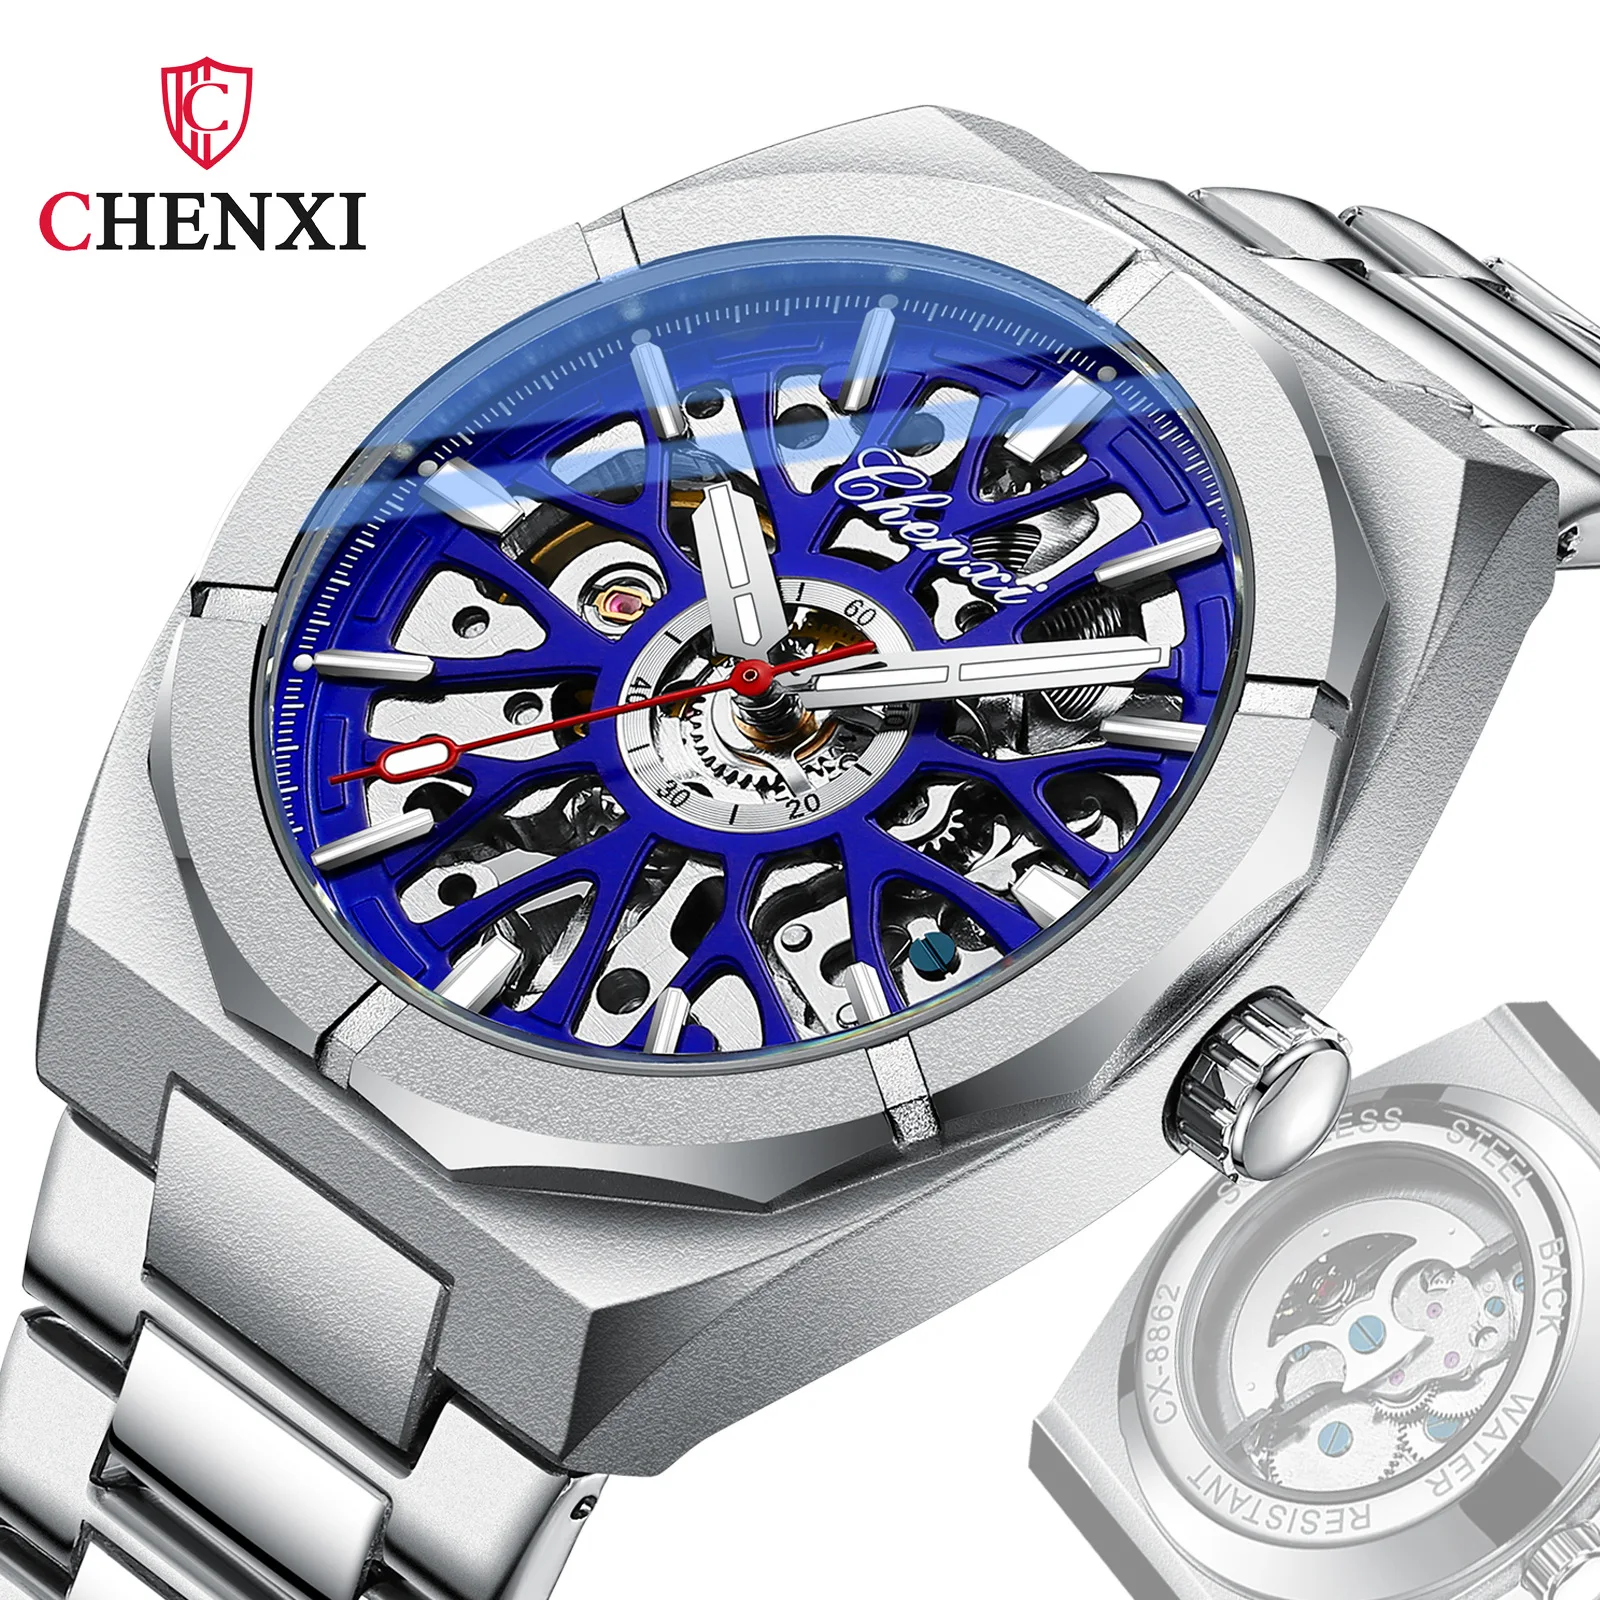 

Часы наручные CHENXI Мужские автоматические, брендовые механические Спортивные Водонепроницаемые из нержавеющей стали с турбийоном